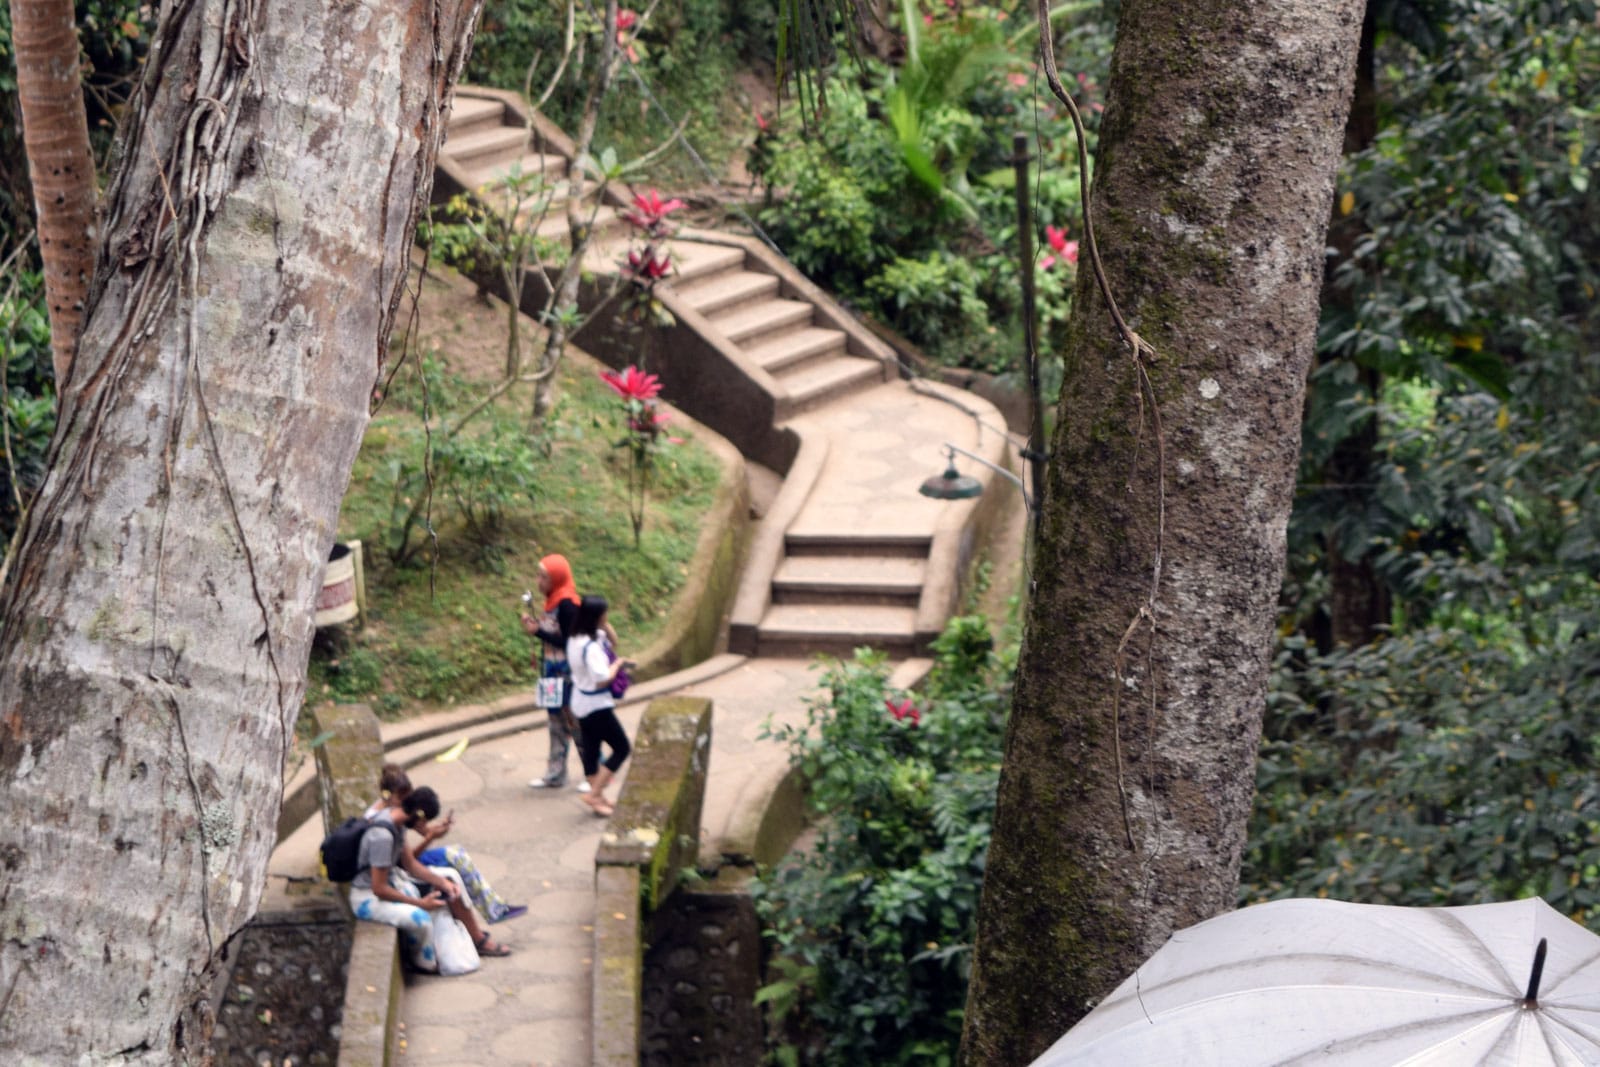 De trap richting het bos van de olifantengrot